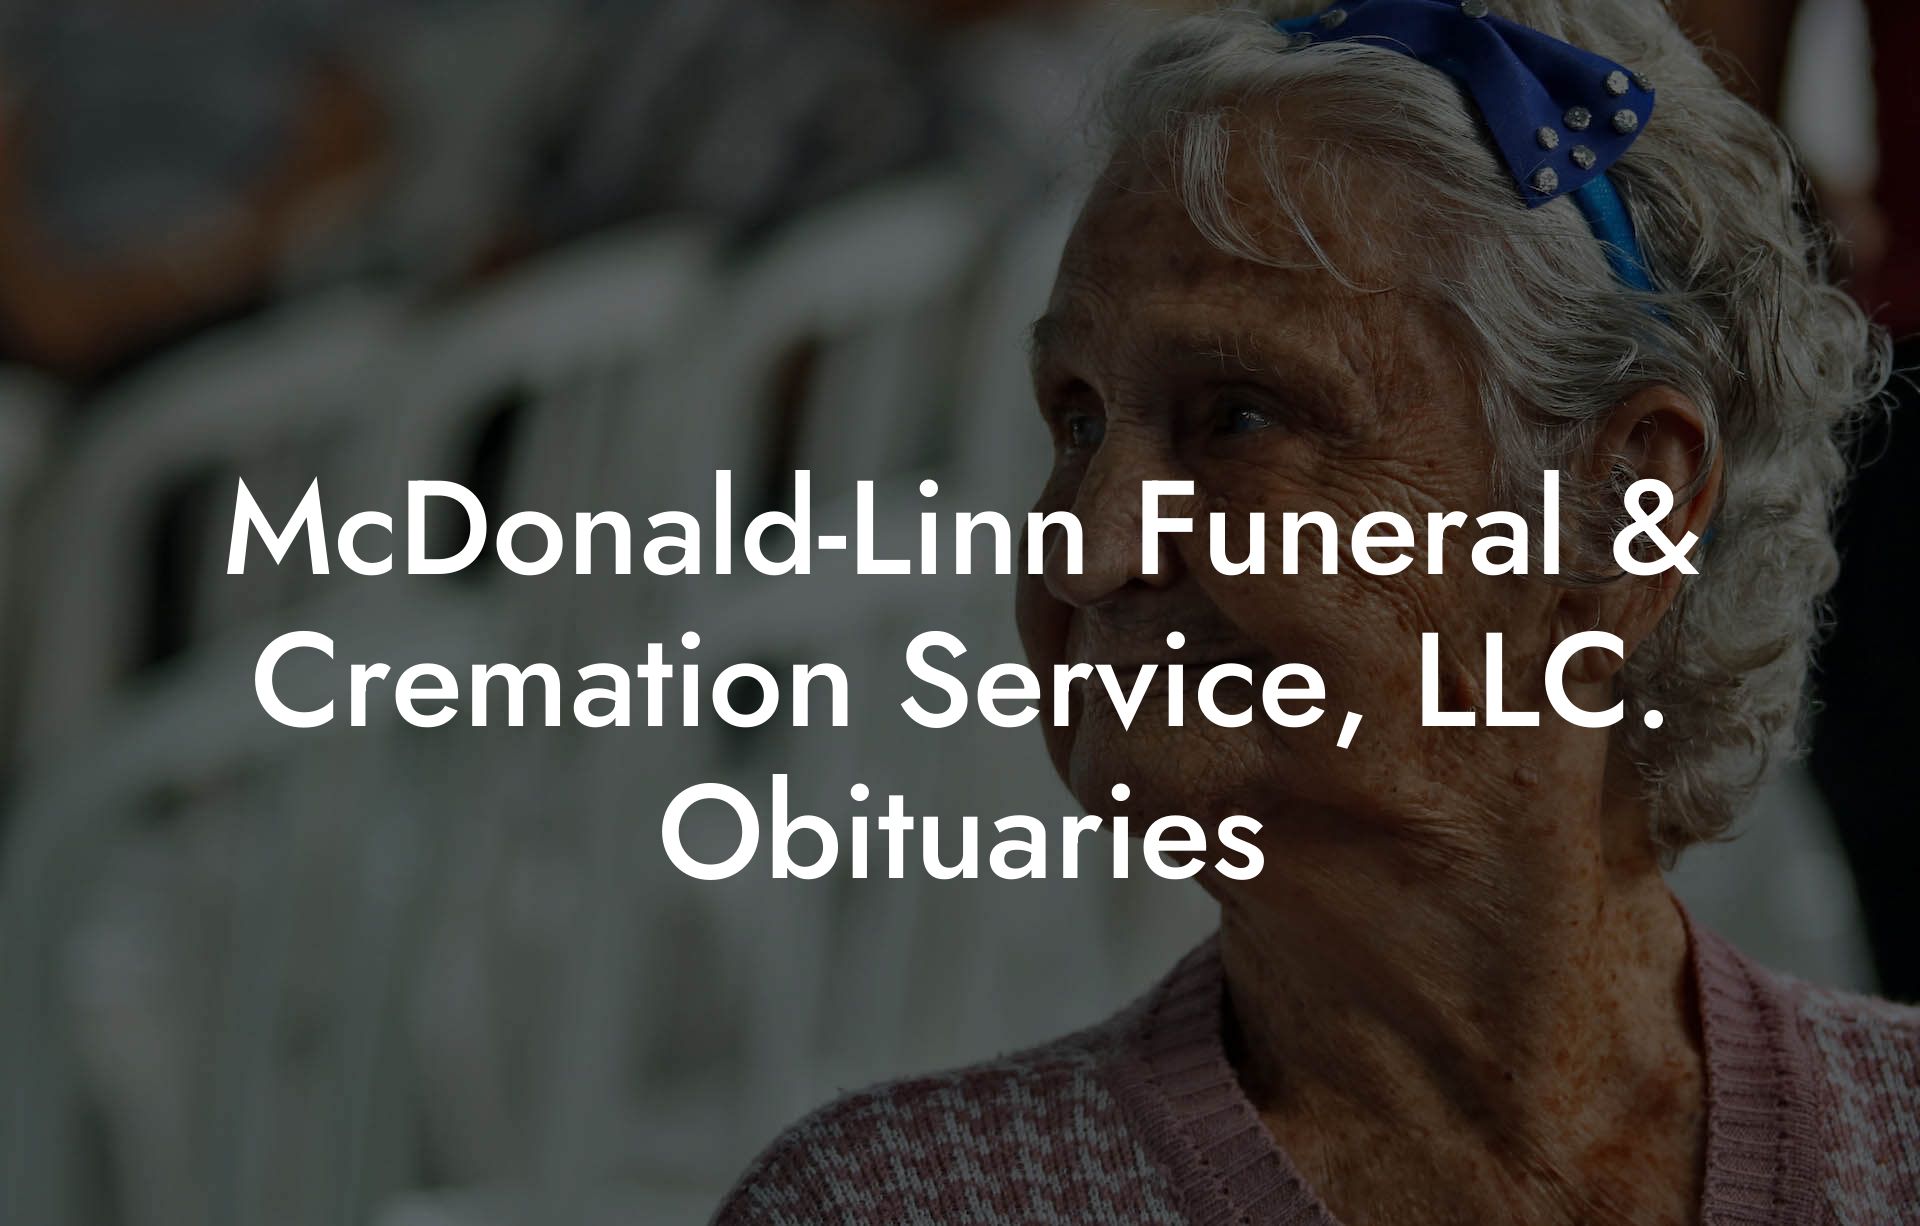 McDonald-Linn Funeral & Cremation Service, LLC. Obituaries